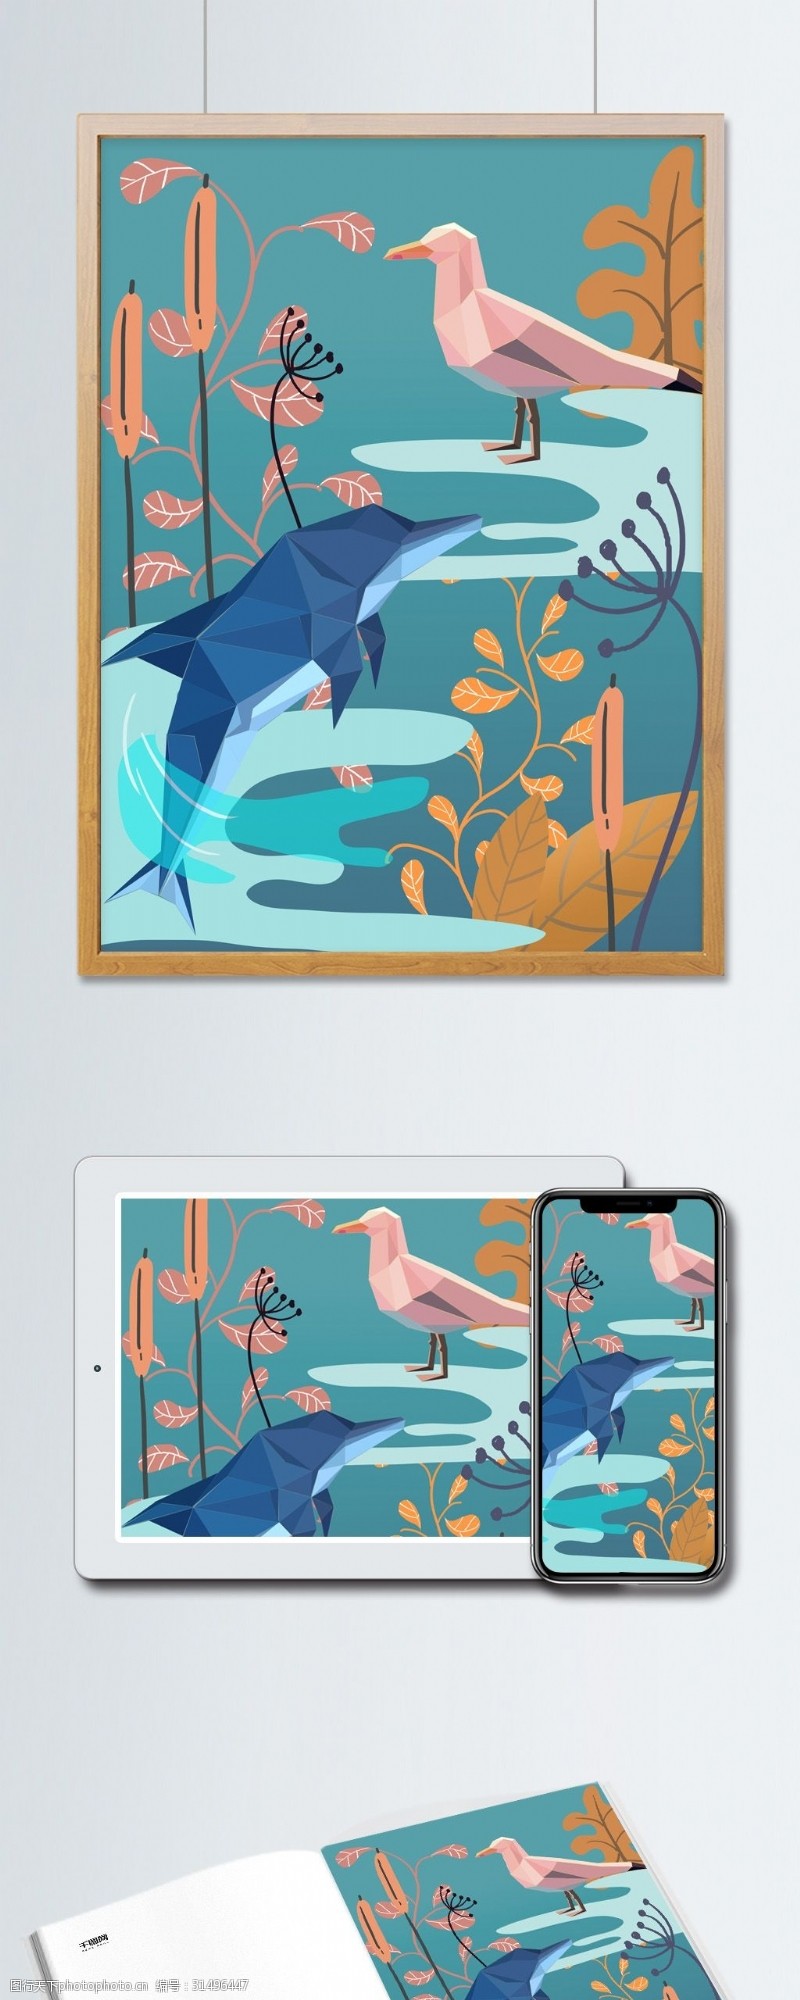 手机配图自然印记几何创意动物植物装饰海豚海洋水鸟